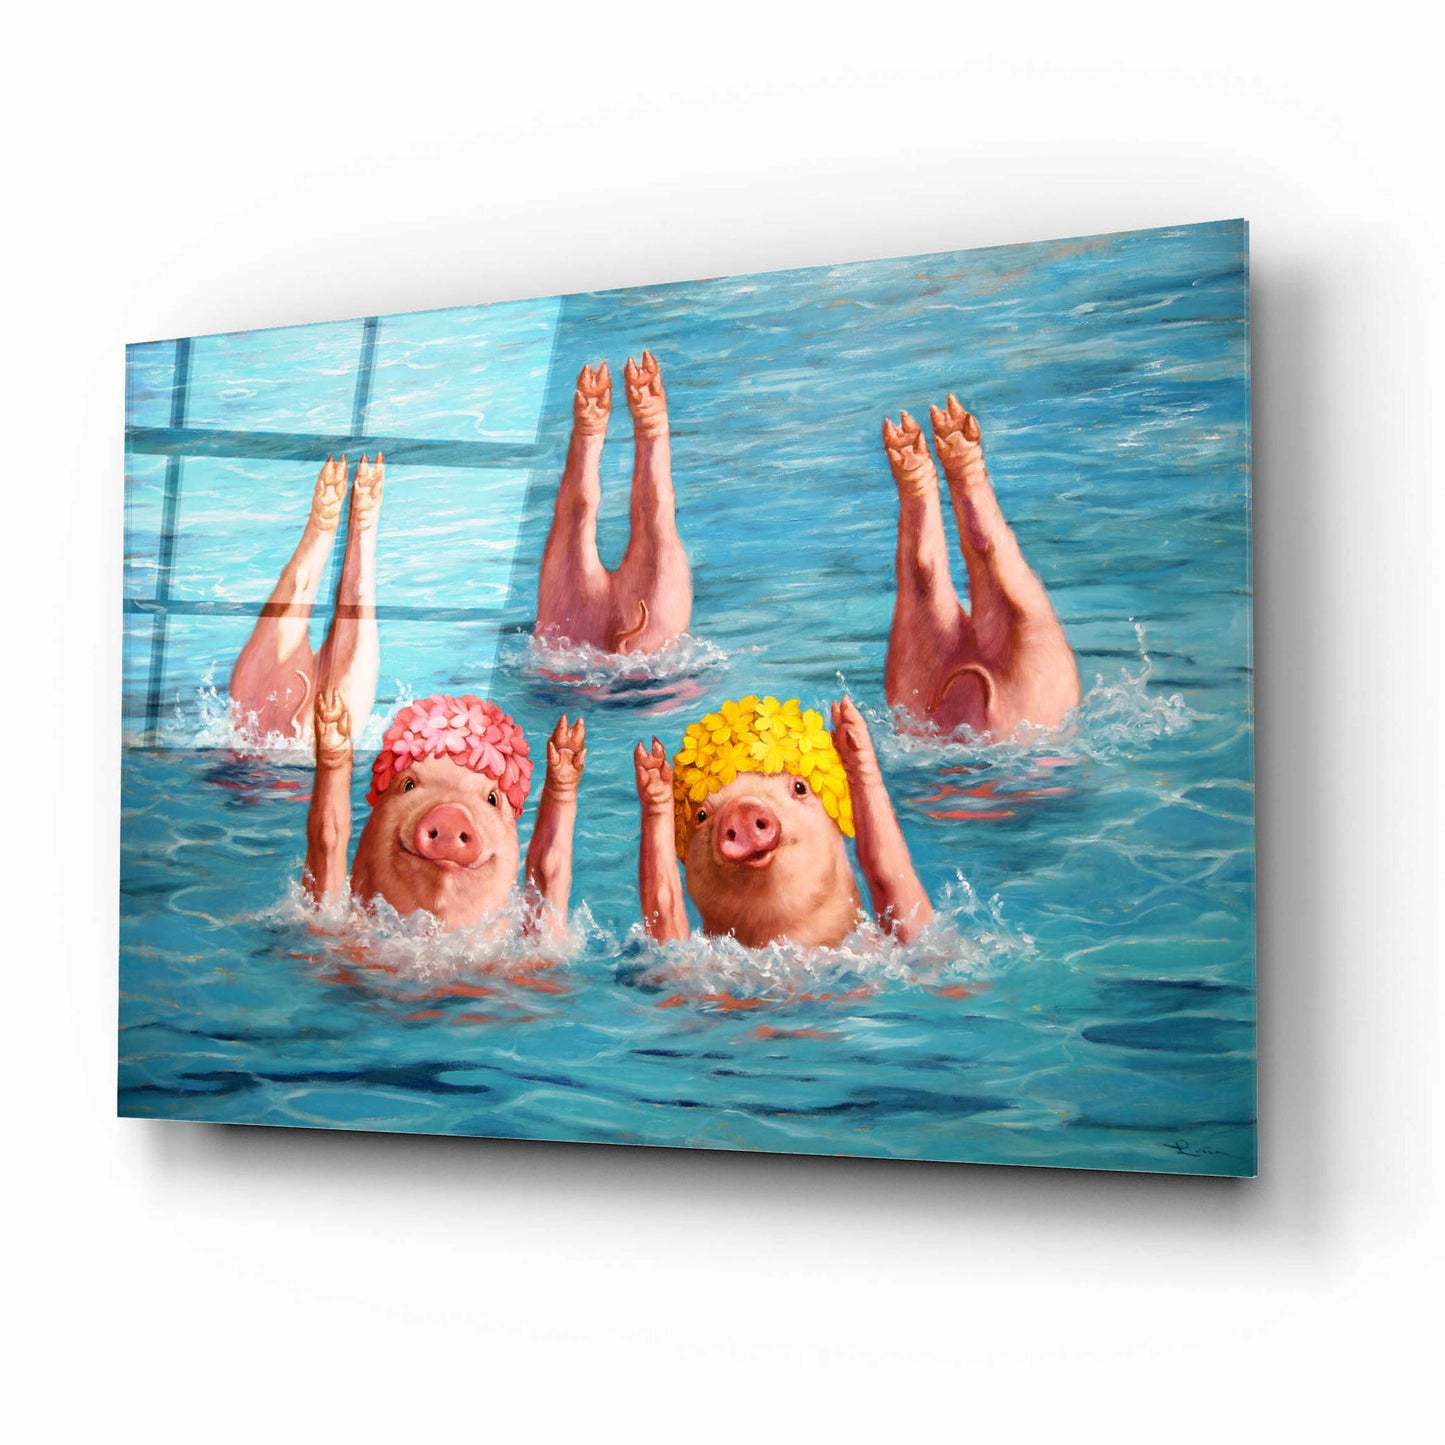 Epic Art 'Water Ballet' by Lucia Heffernan,16x12